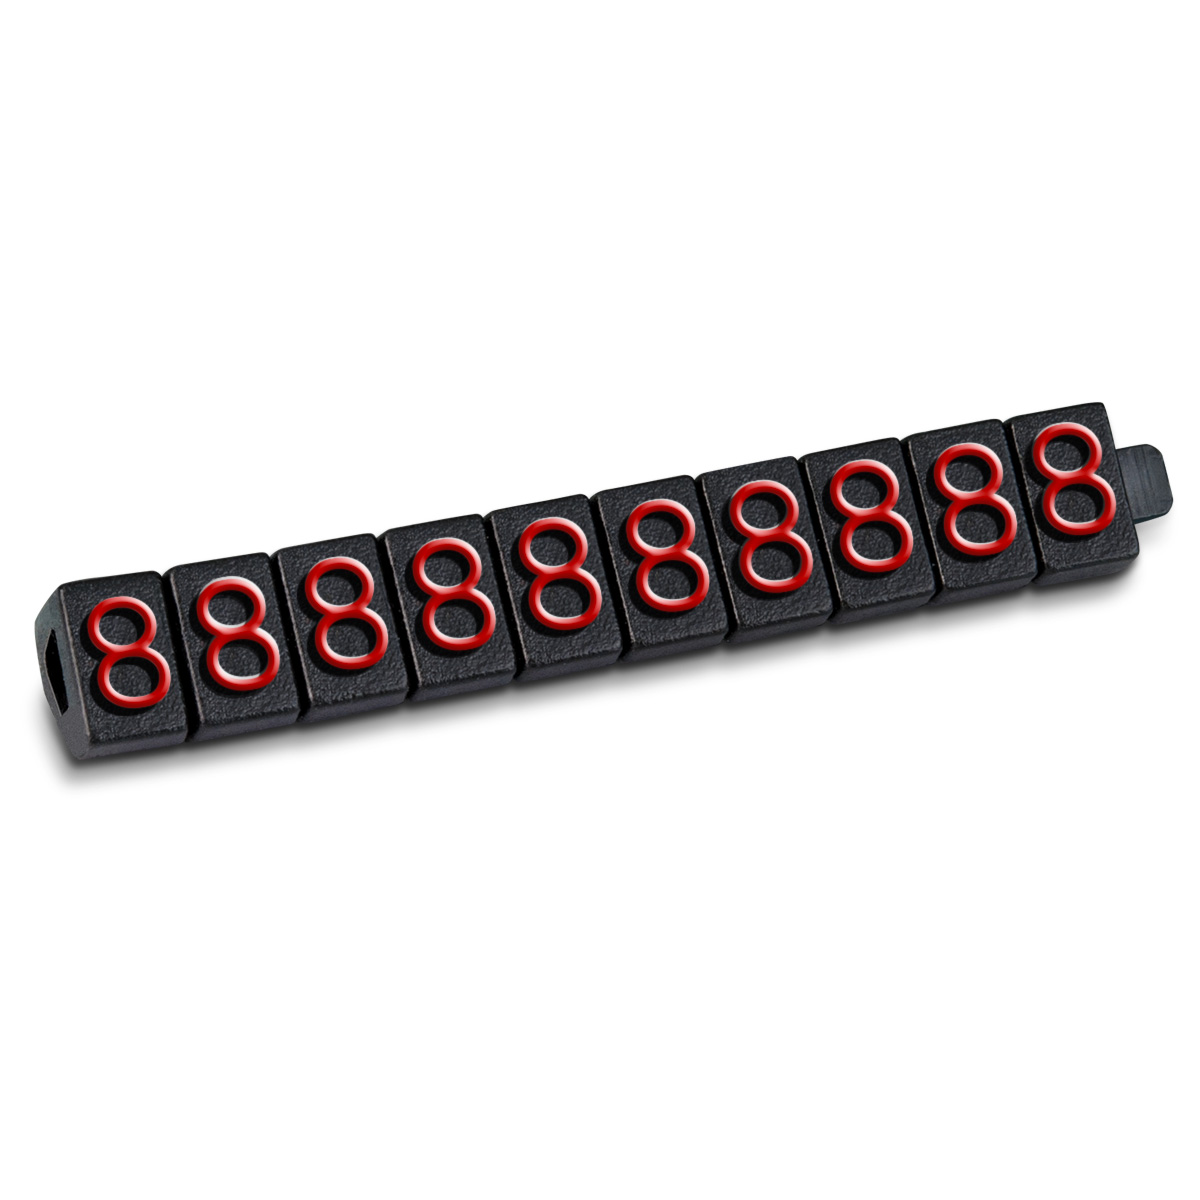 Preisziffer bedruckt mit: "8", Schwarz, Rot, 100 Stück